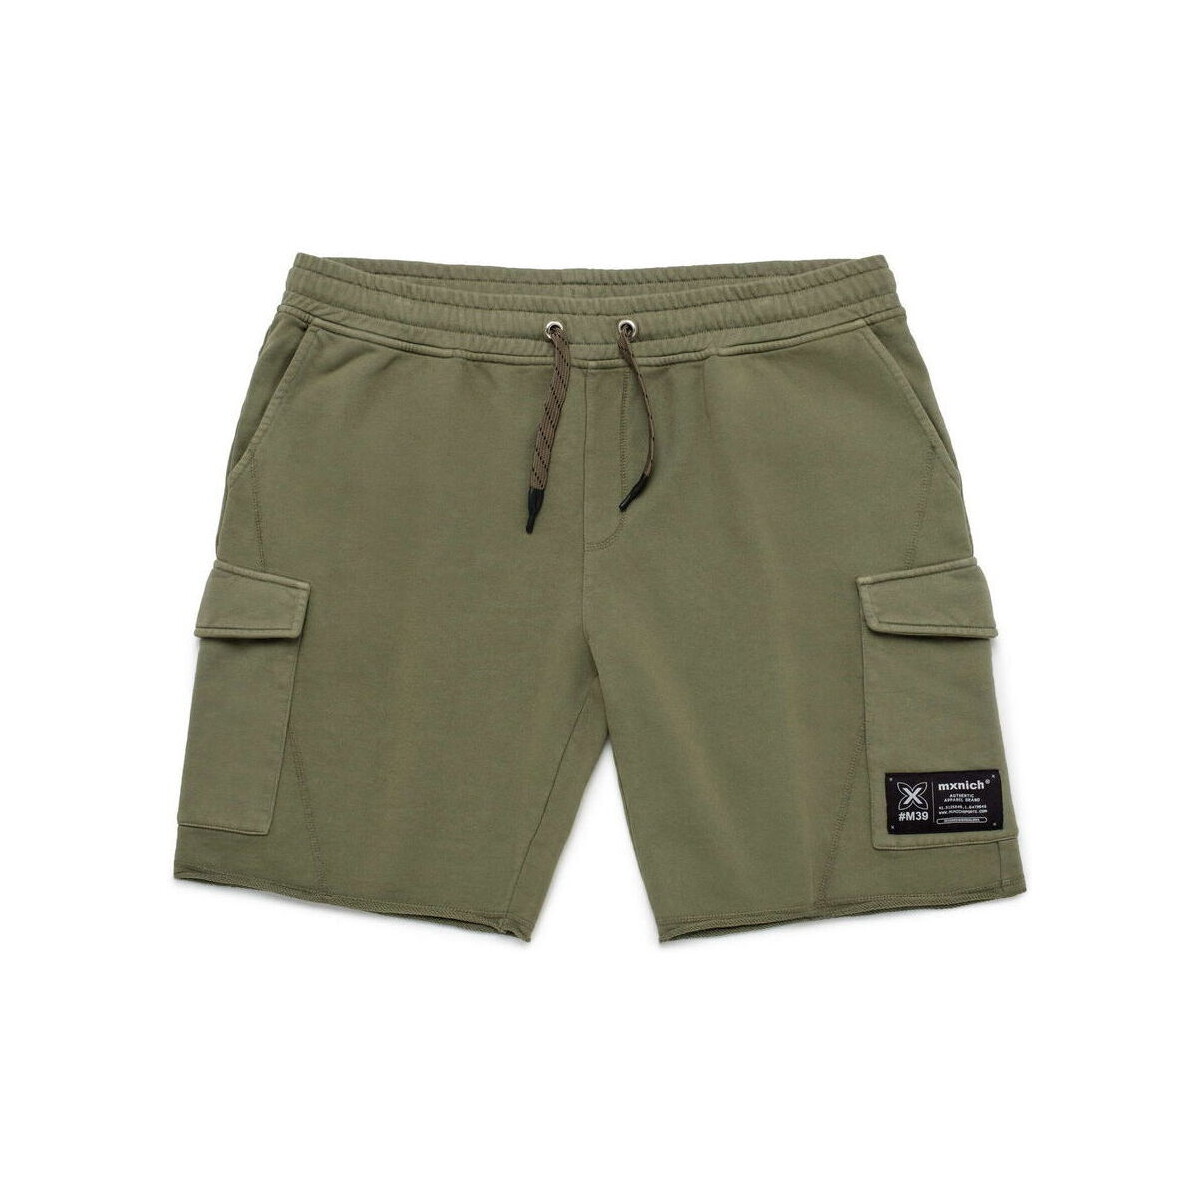 textil Hombre Shorts / Bermudas Munich Bermuda camp Verde